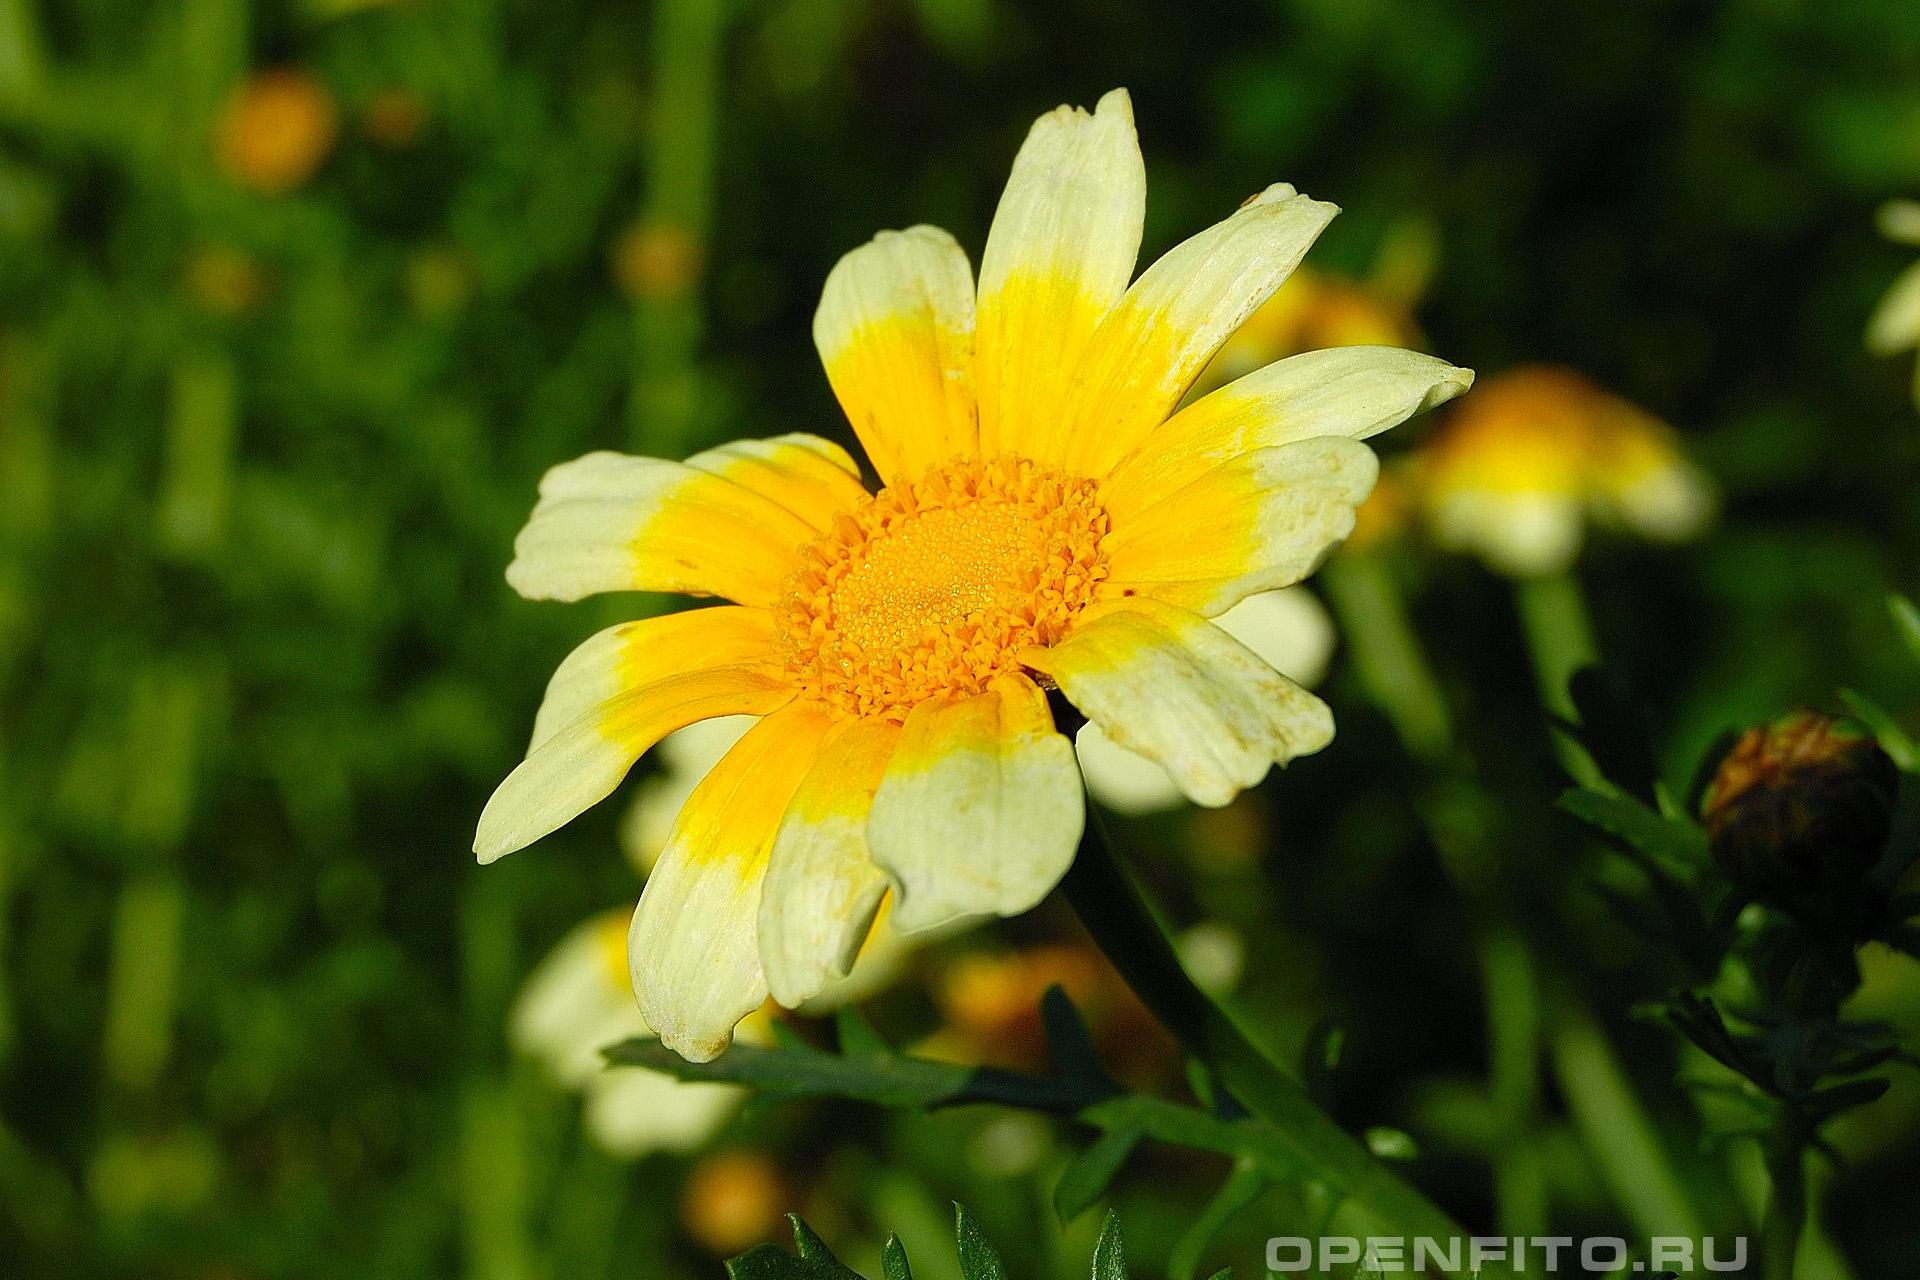 Хризантема увенчанная. Хризантема (Златоцвет). Златоцвет увенчанный. Златоцвет посевной цветок. Хризантема увенчанная Chrysanthemum coronarium l..